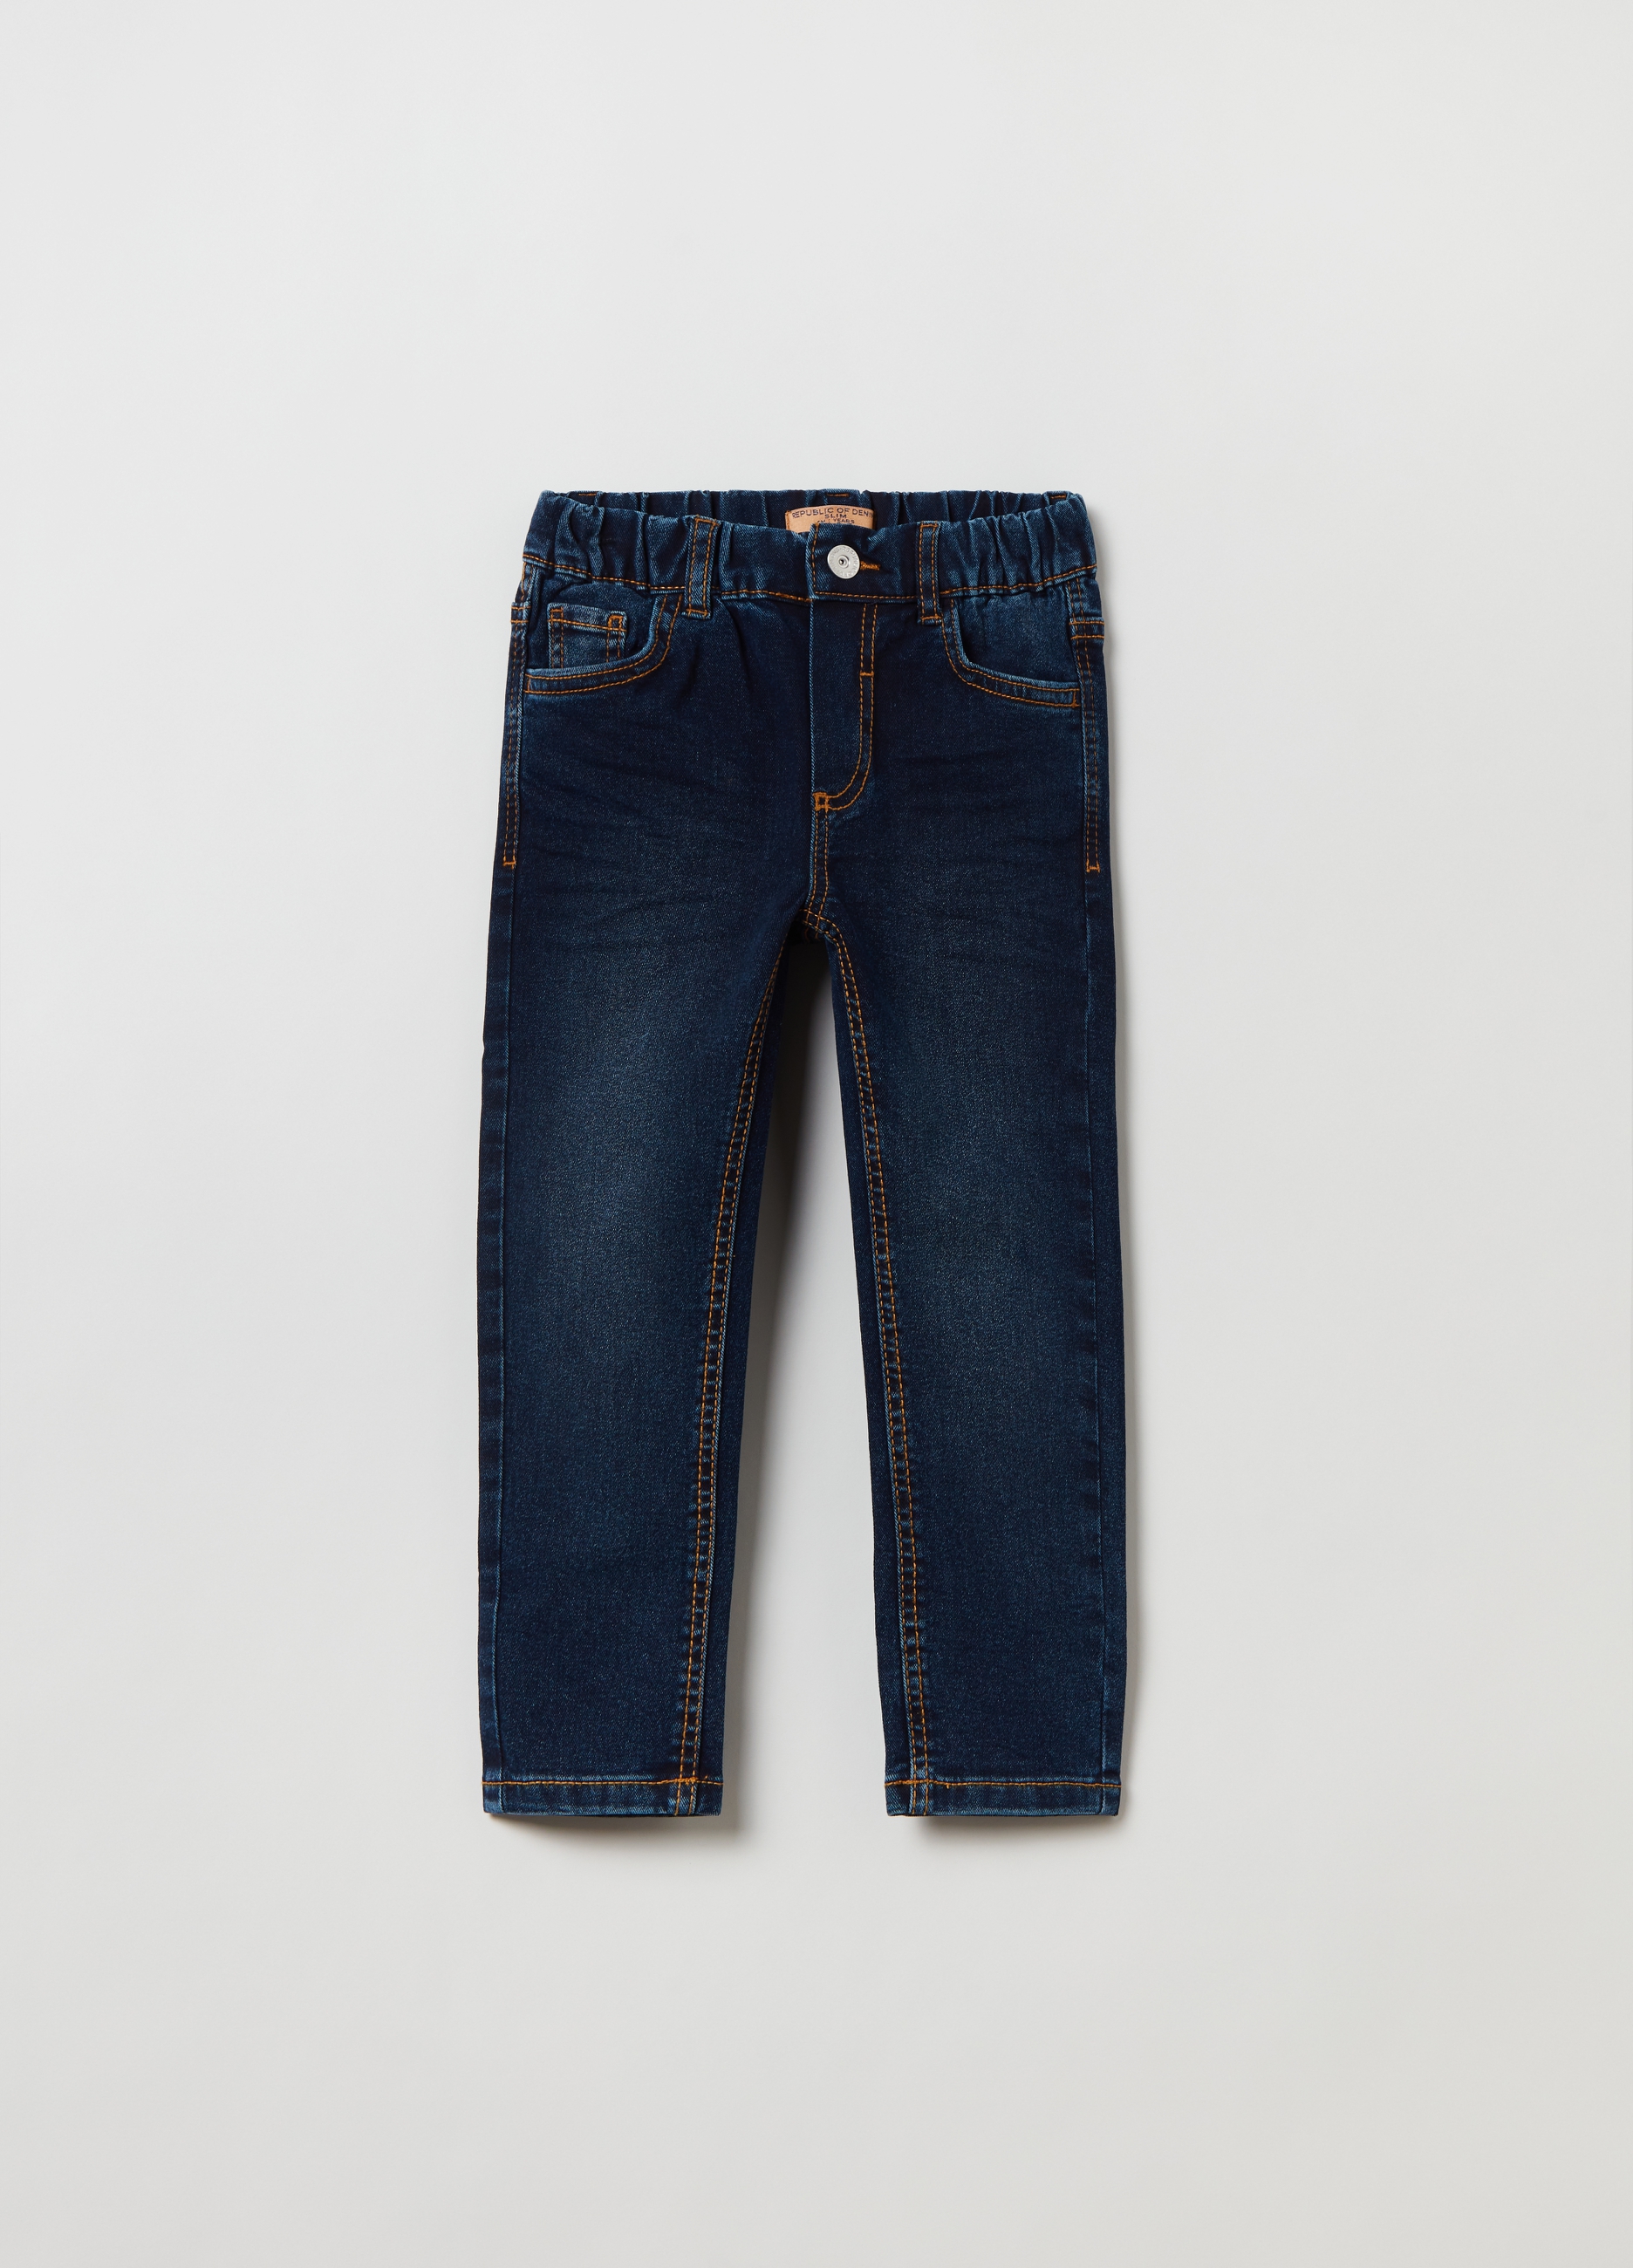 Джинсы OVS для мальчиков, синие, 4-5 лет, 1810929 джинсы jogger fit для мальчиков